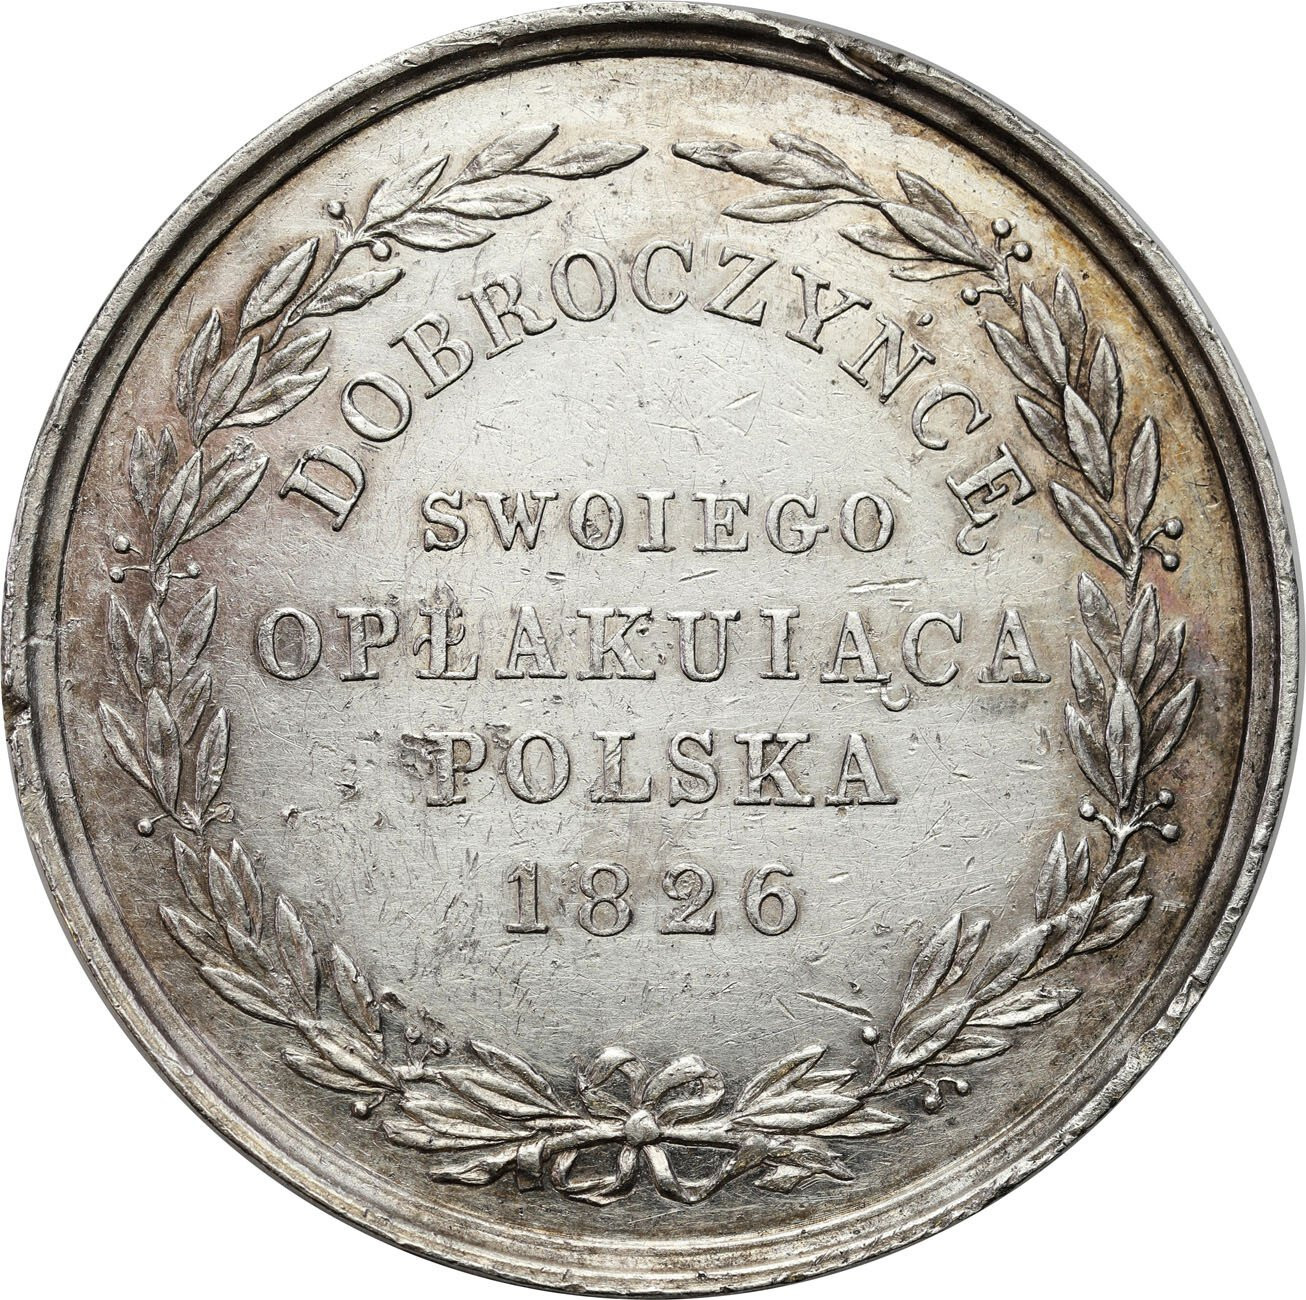 Królestwo Polskie/Rosja. Medal 1826 na śmierć Aleksandra I Polska opłakująca dobroczyńcę swojego, srebro – WERSJA DUŻA